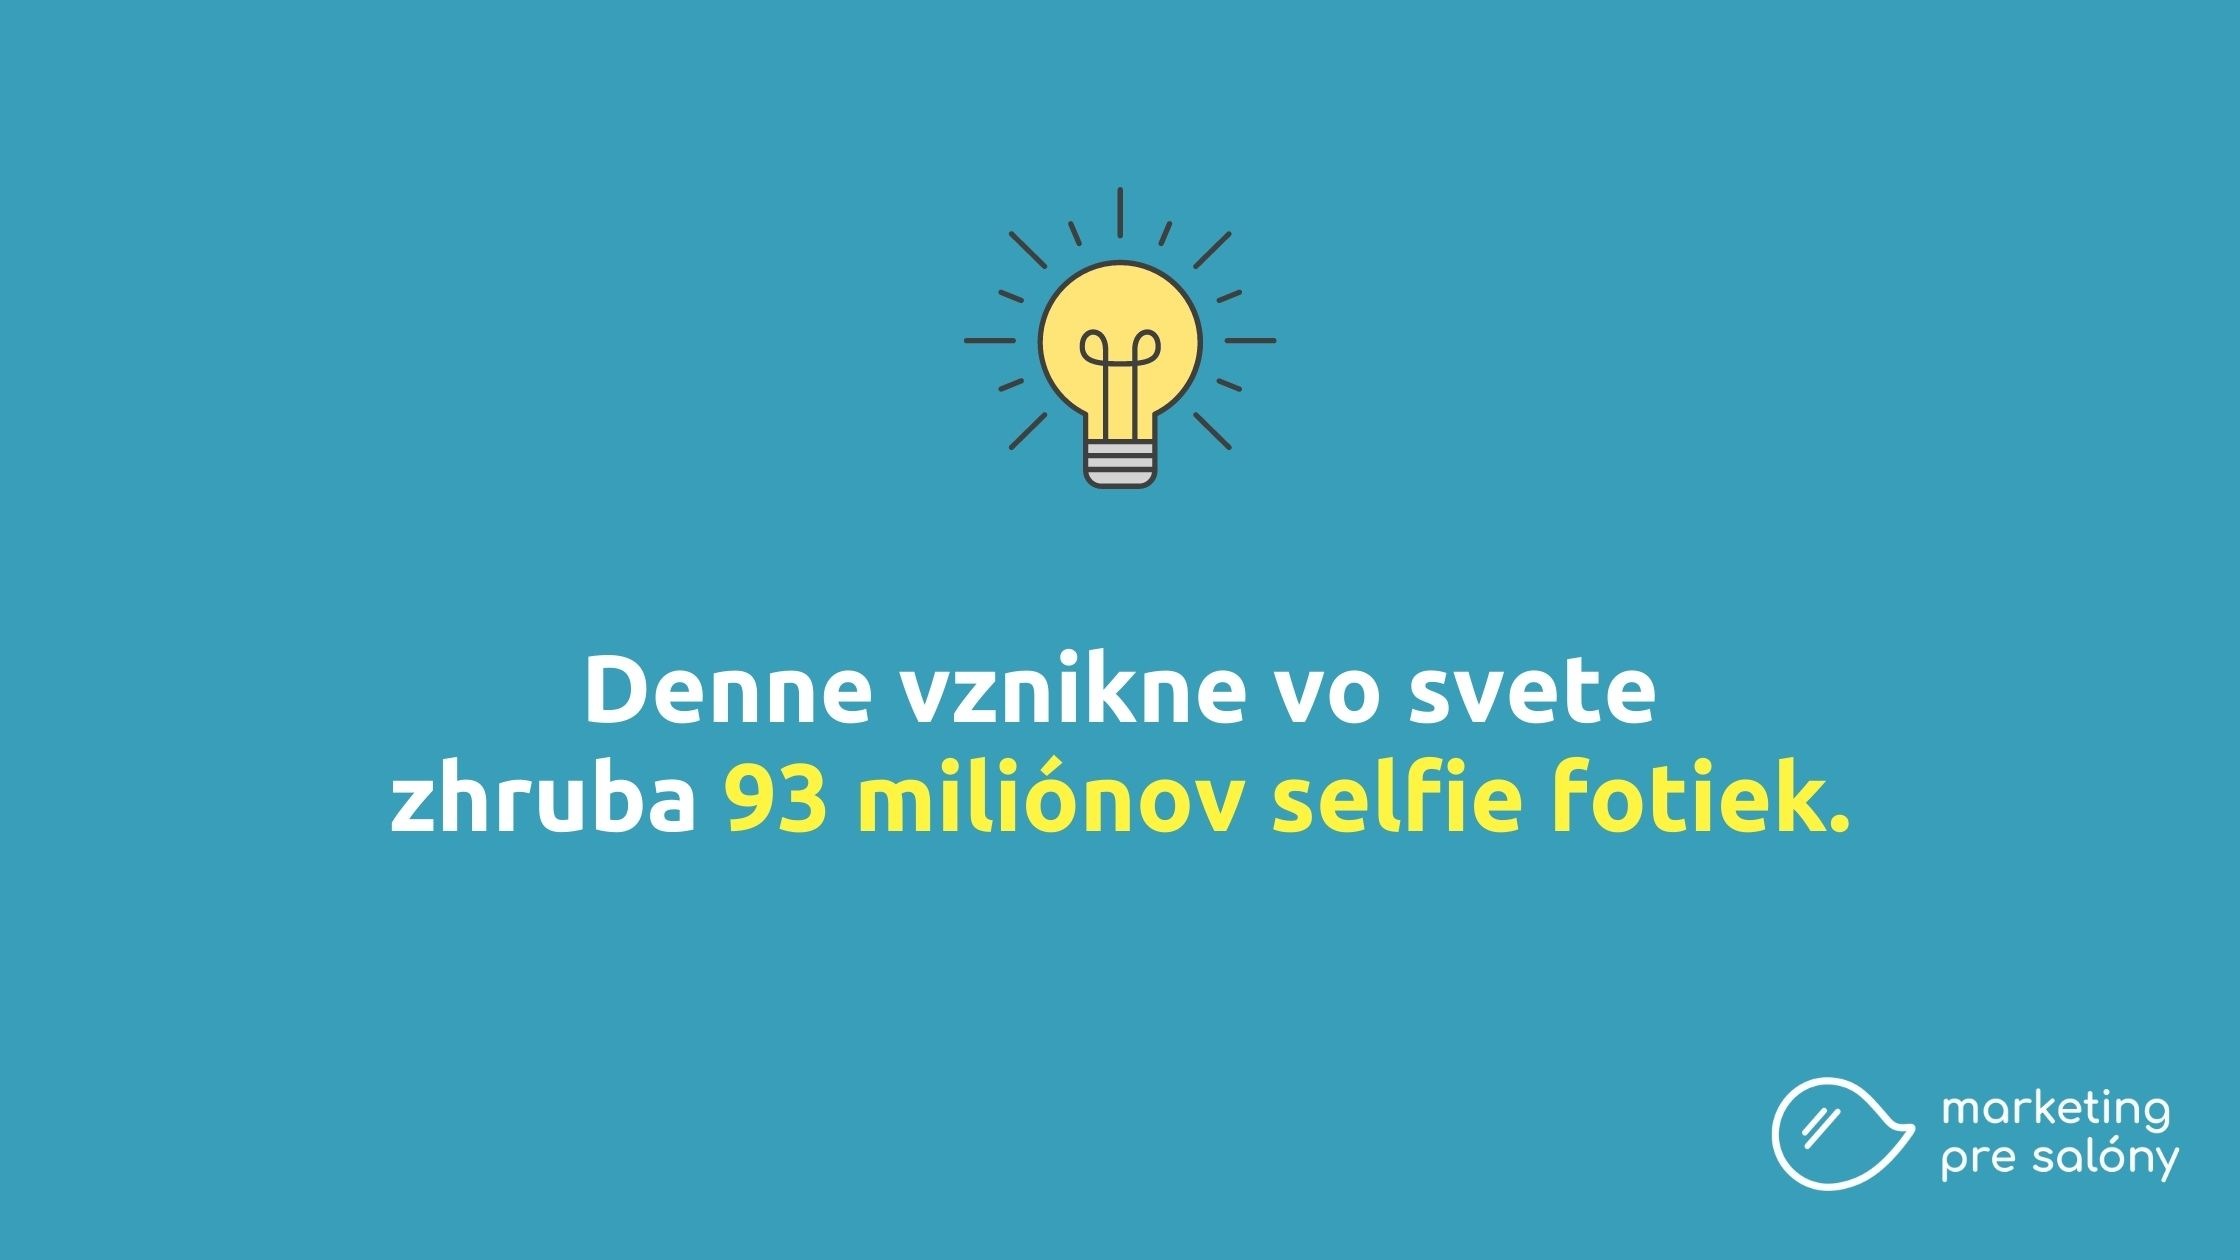 Denne vznikne zhruba 93 miliónov selfie.